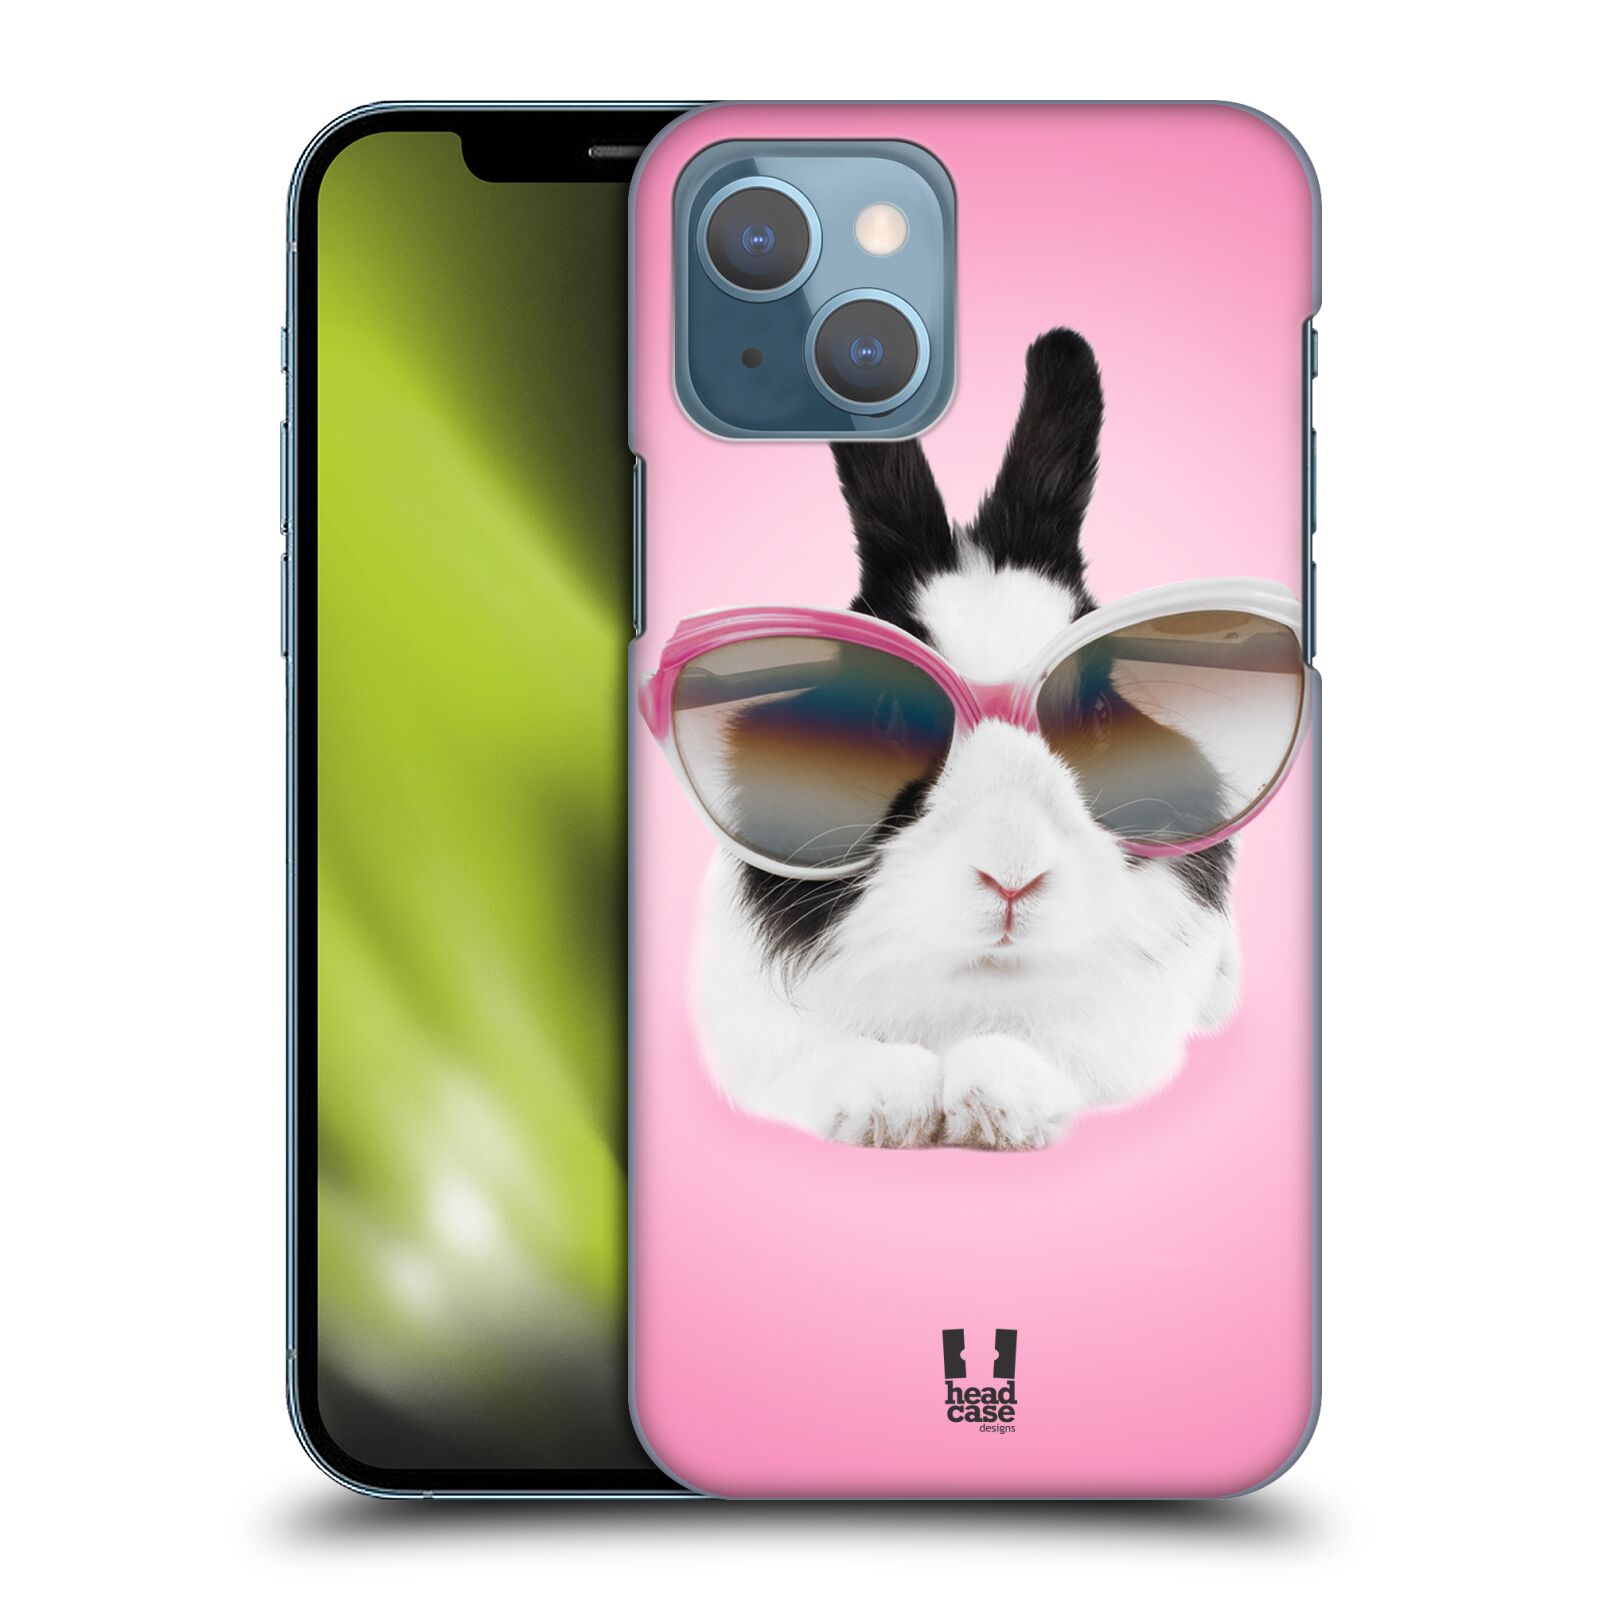 Plastový obal HEAD CASE na mobil Apple Iphone 13 vzor Legrační zvířátka roztomilý králíček s brýlemi růžová